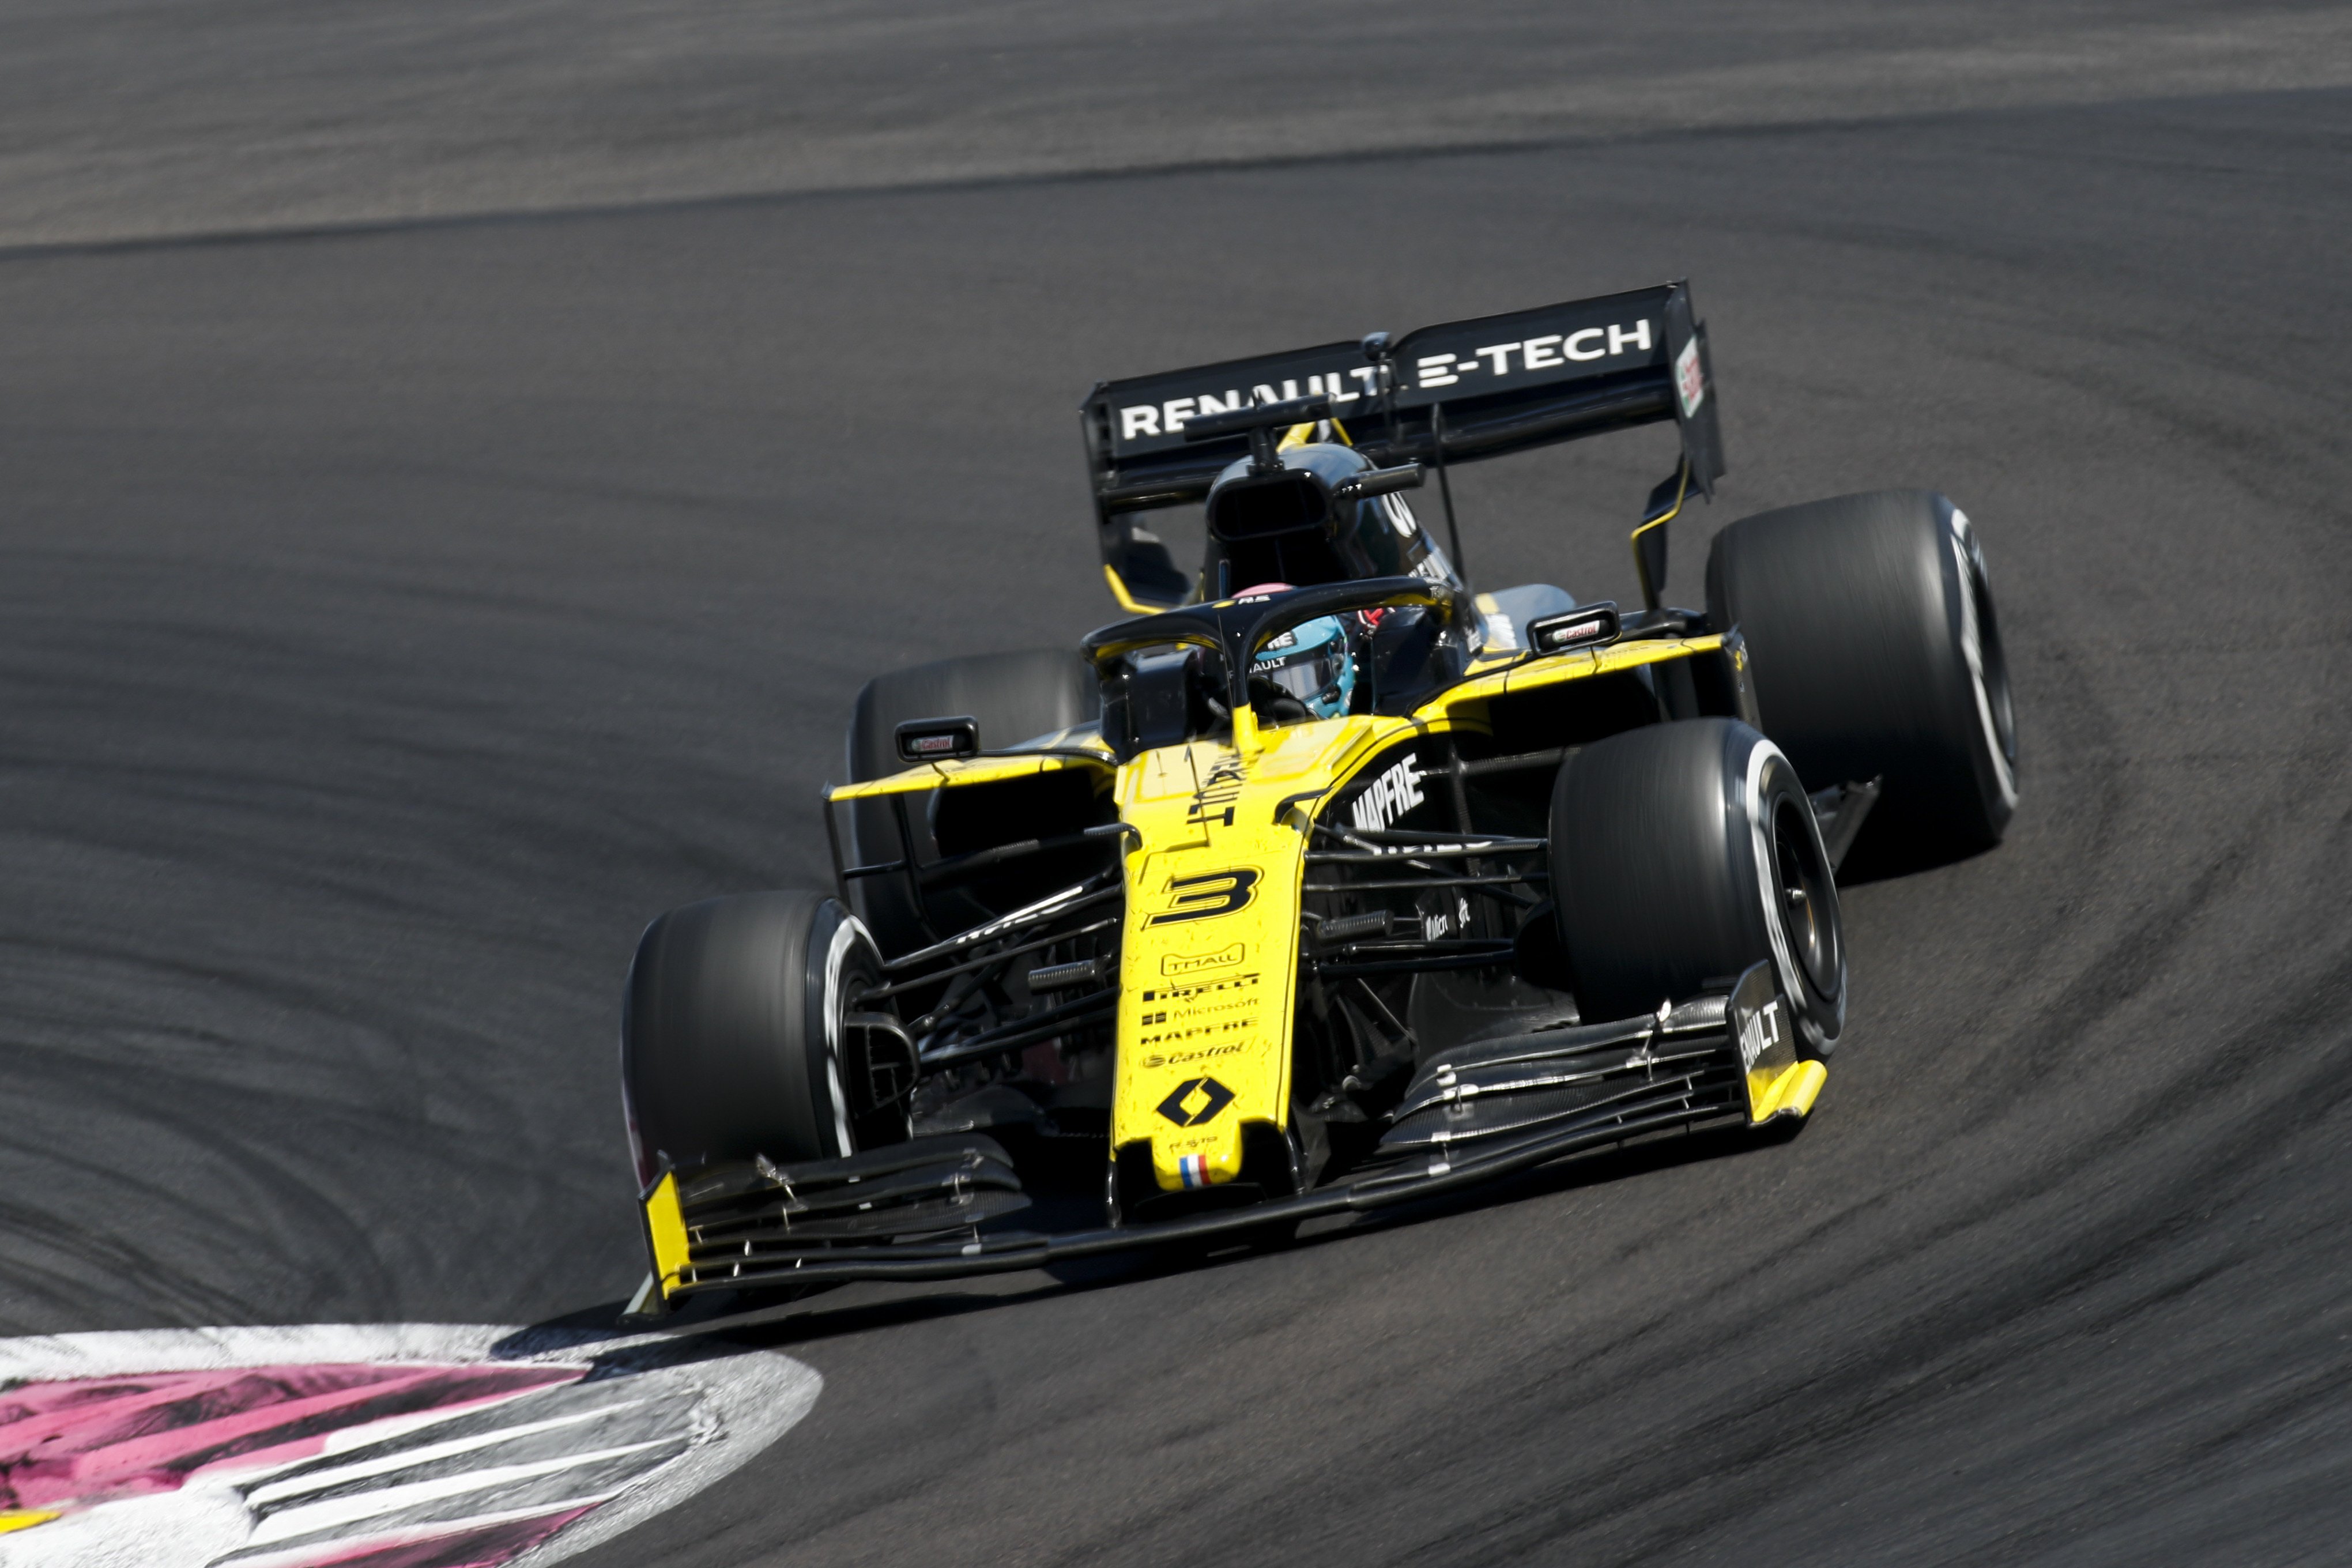 Pembalap Renault, Daniel Ricciardo, dijatuhi dua sanksi sekaligus di GP Prancis 2019. (Foto: Twitter/@danielricciardo)